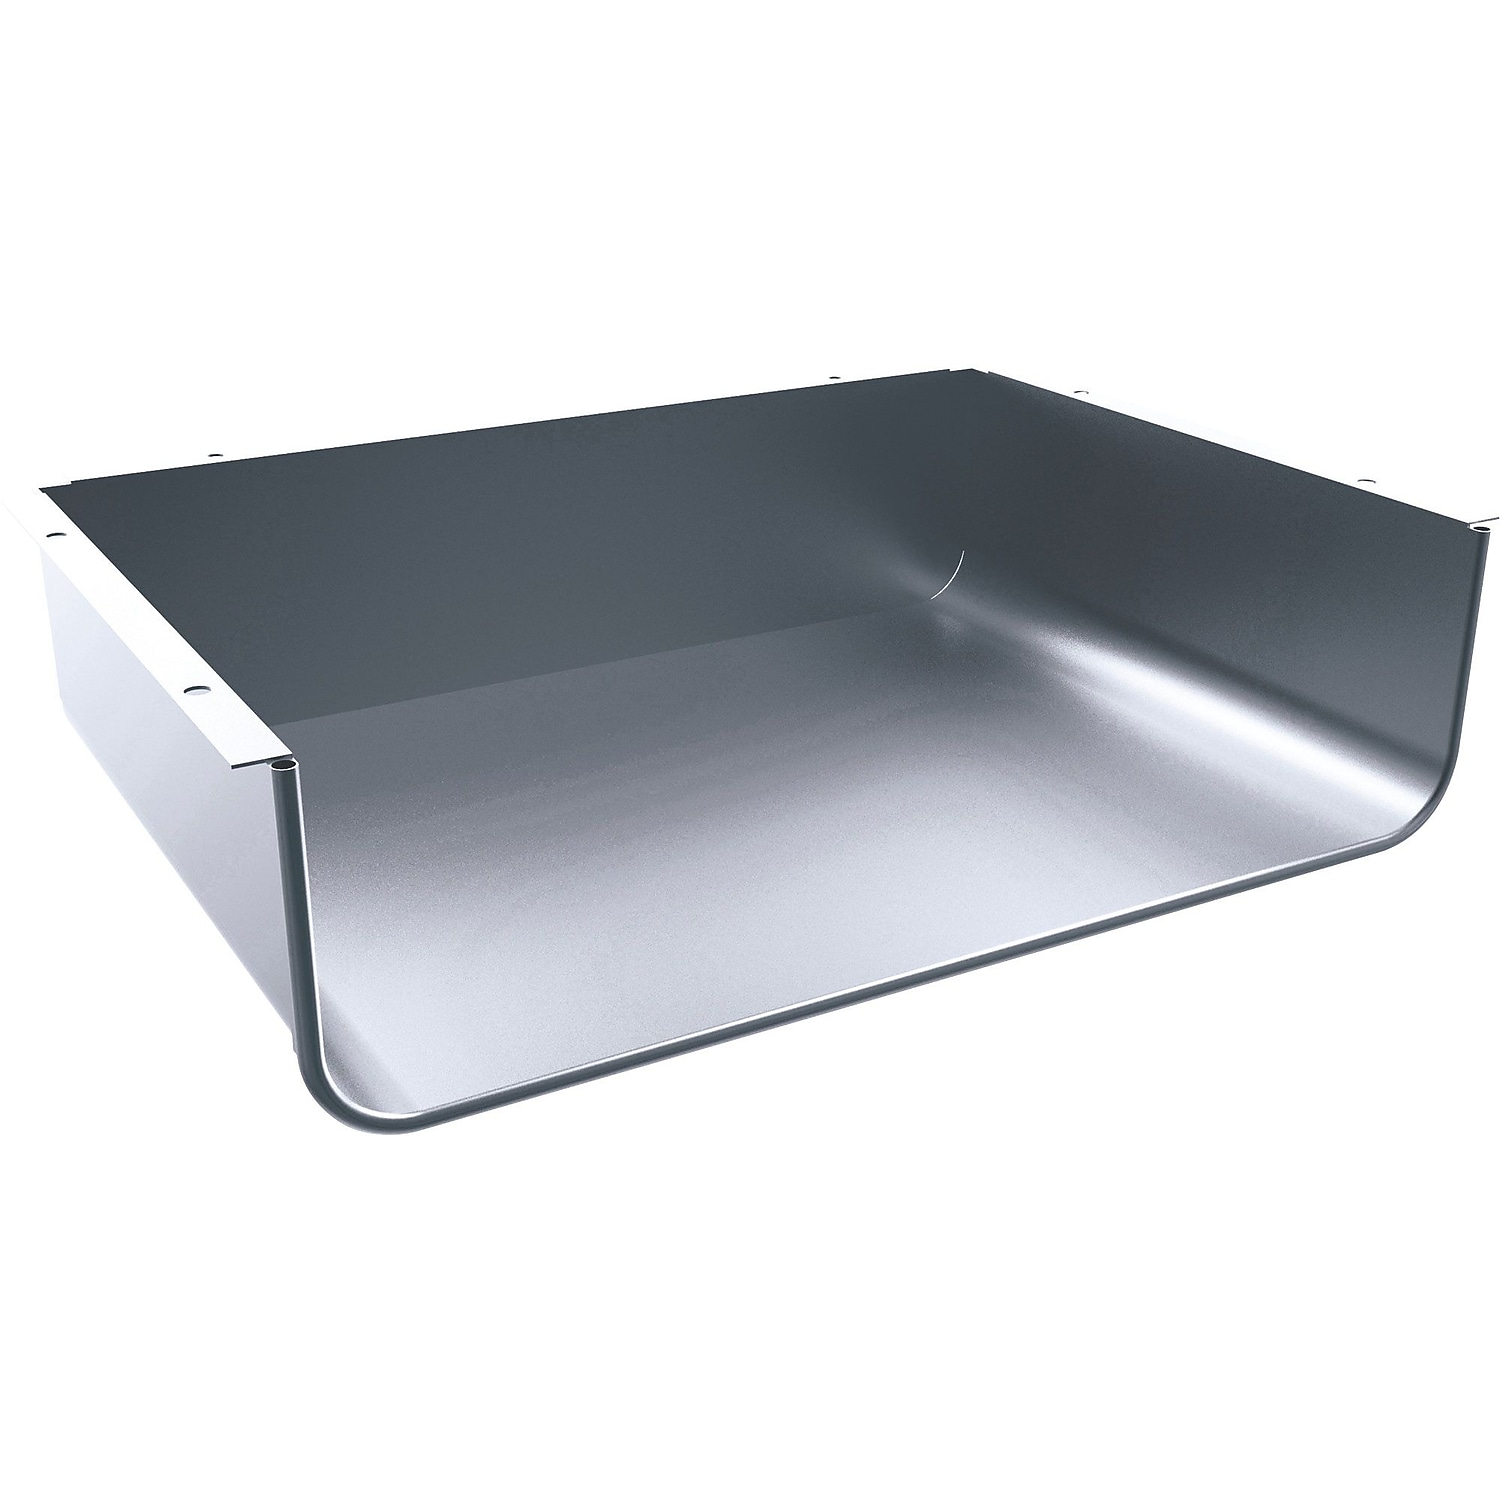 Balt Shapes Cloud and Quad Desk/Table Optional Book Box Platinum 4"H x 17"W x 12"D 66633 - image 1 of 1